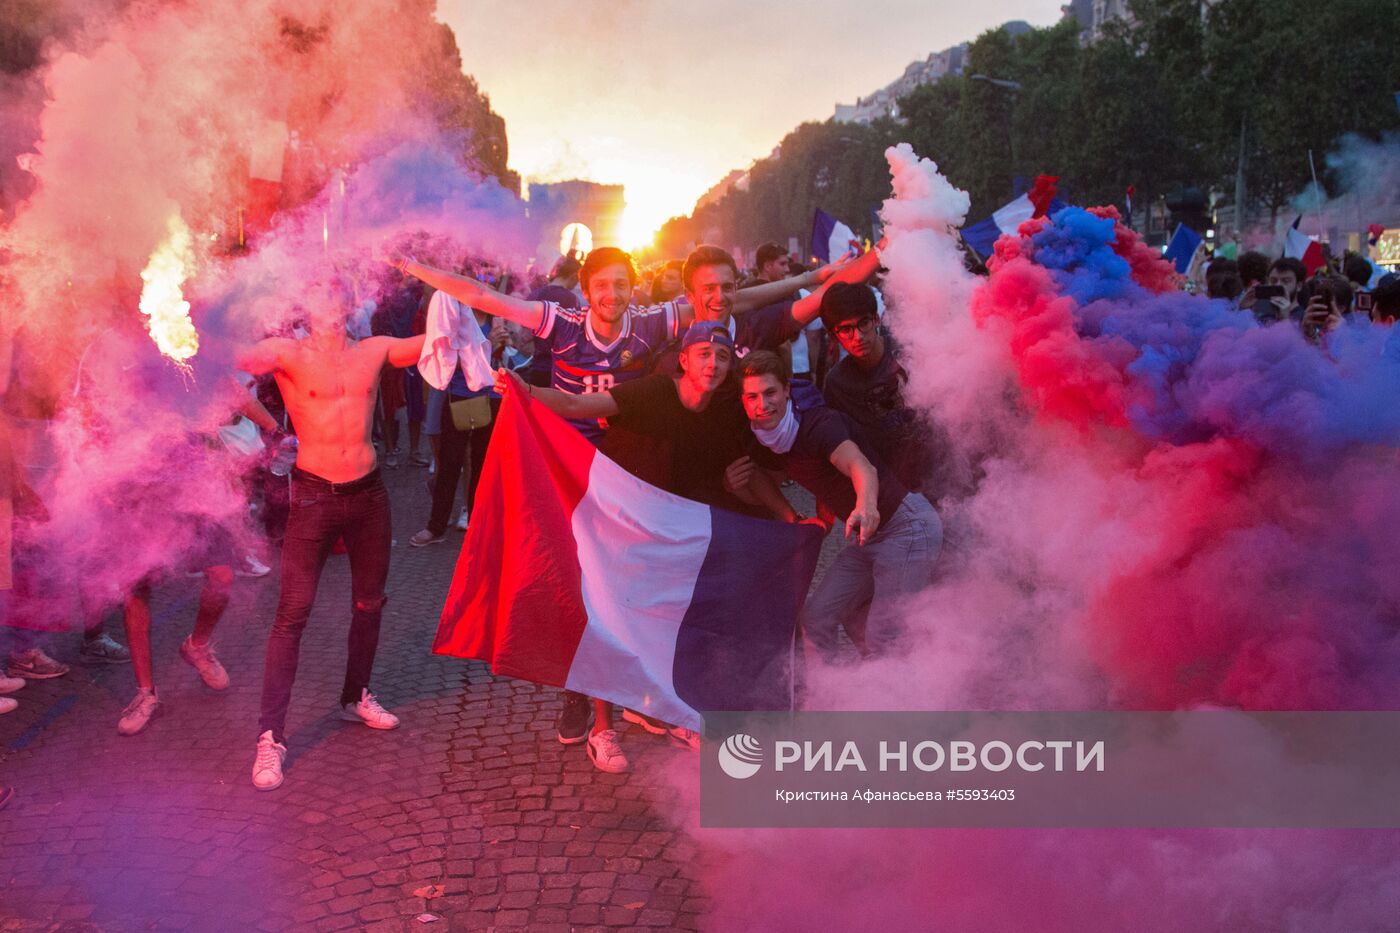 В Париже празднуют победу сборной Франции на ЧМ-2018 по футболу